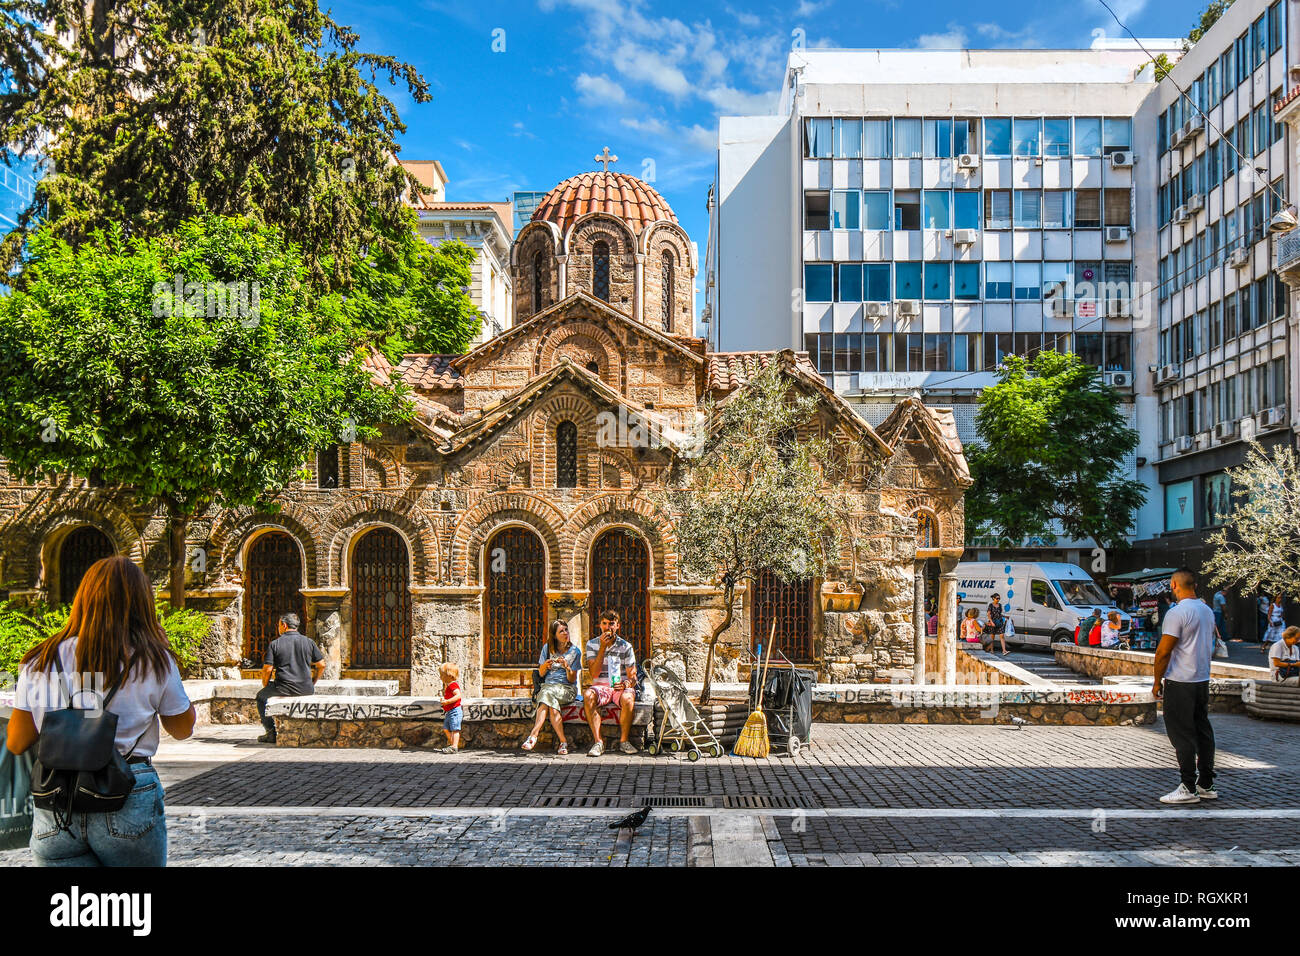 Athens, Grecia - 17 Settembre 2018: la chiesa di Panagia Kapnikarea, la chiesa più antica di Atene, situato nel quartiere dello shopping su Ermou Street. Foto Stock